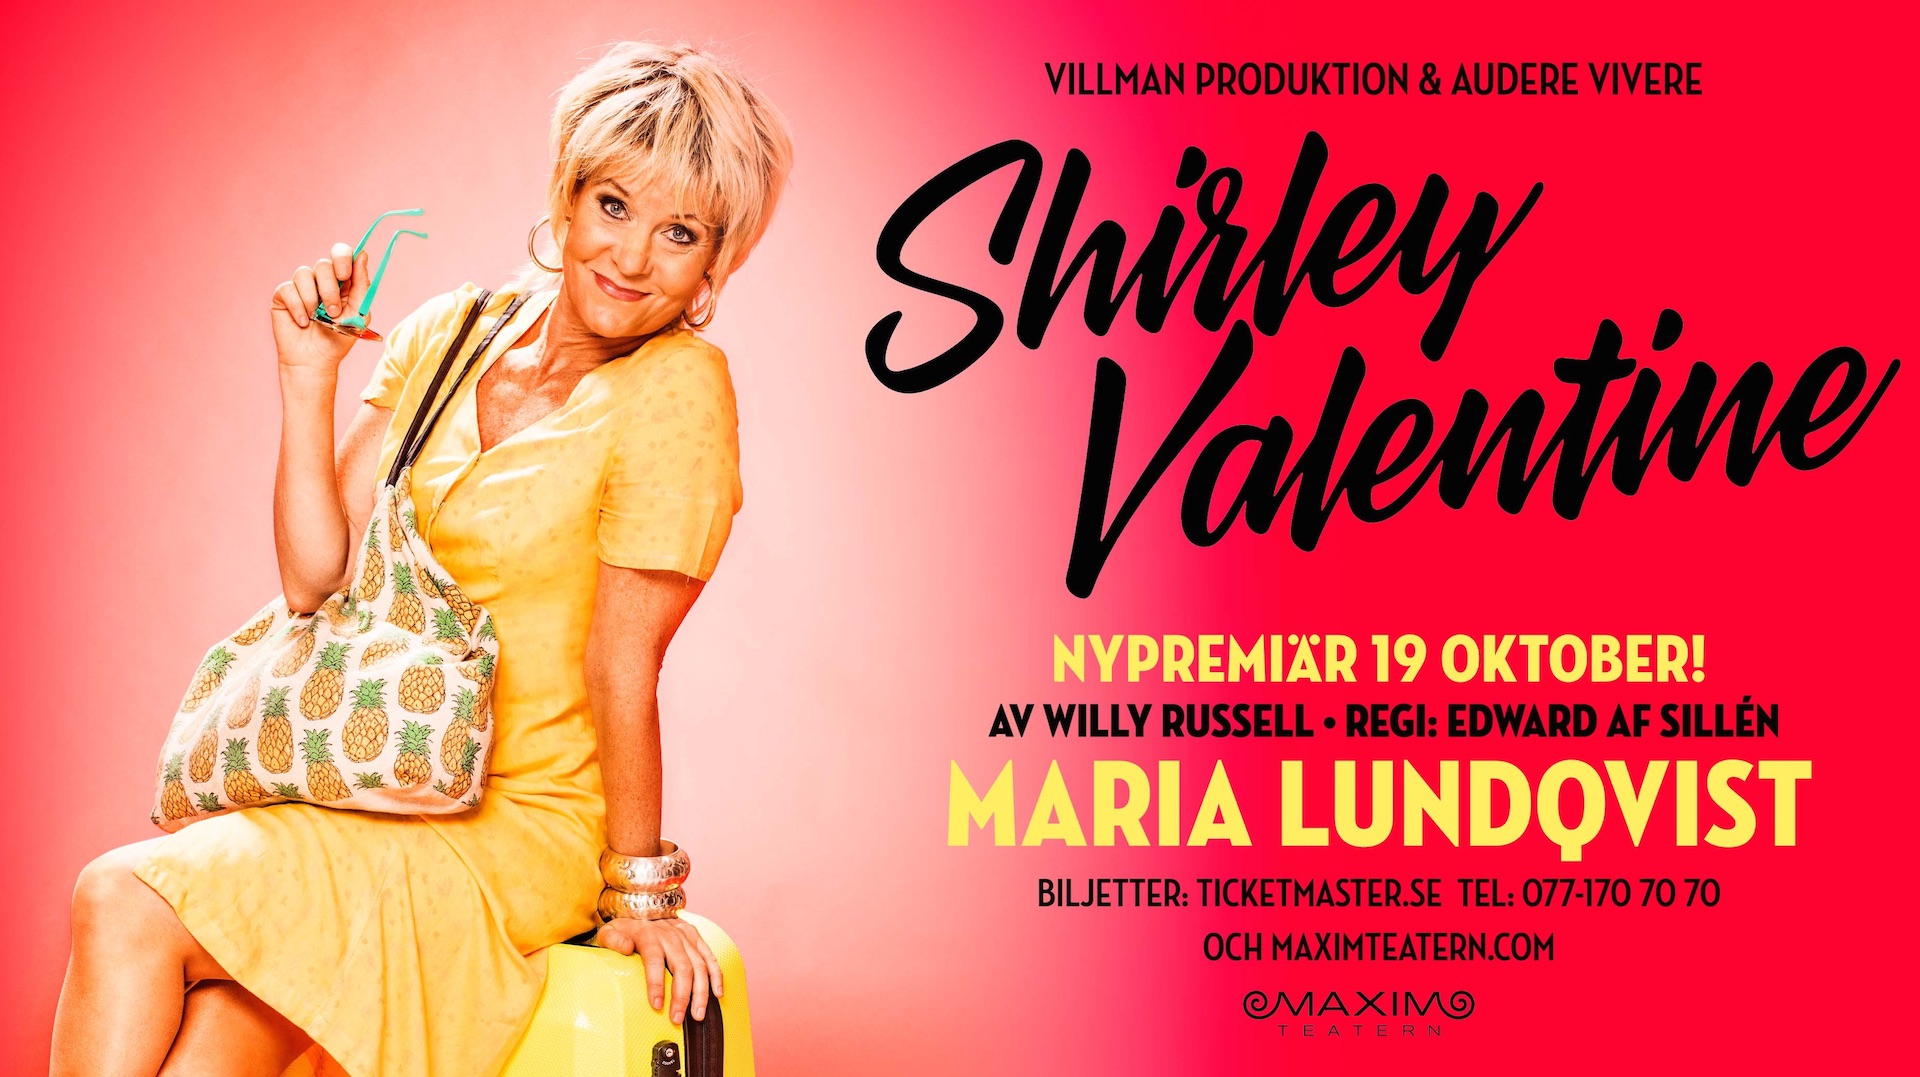 Nu släpper vi höstens biljetter till publiksuccén ”Shirley Valentine” med Maria Lundqvist. Nypremiär på Maximteatern den 19 oktober 2017! 